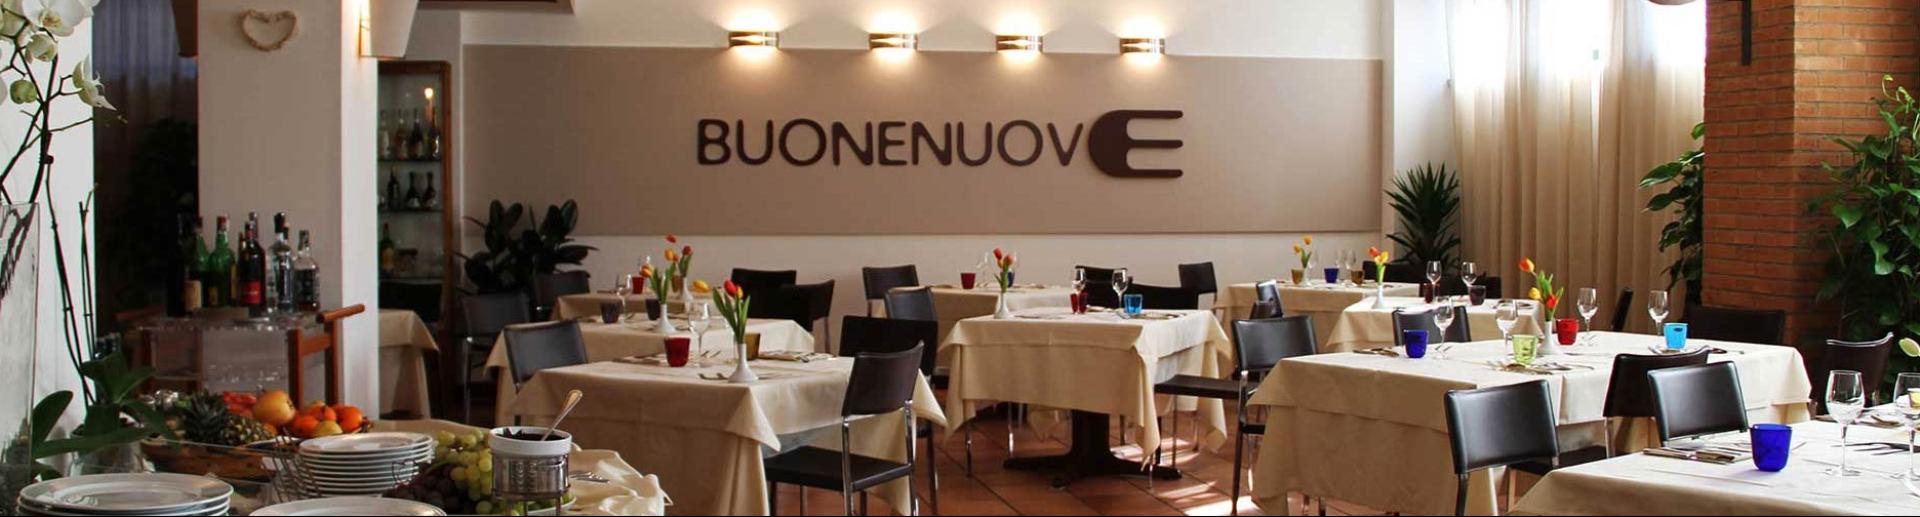 chocohotel it ristorante-buonenuove-perugia 013